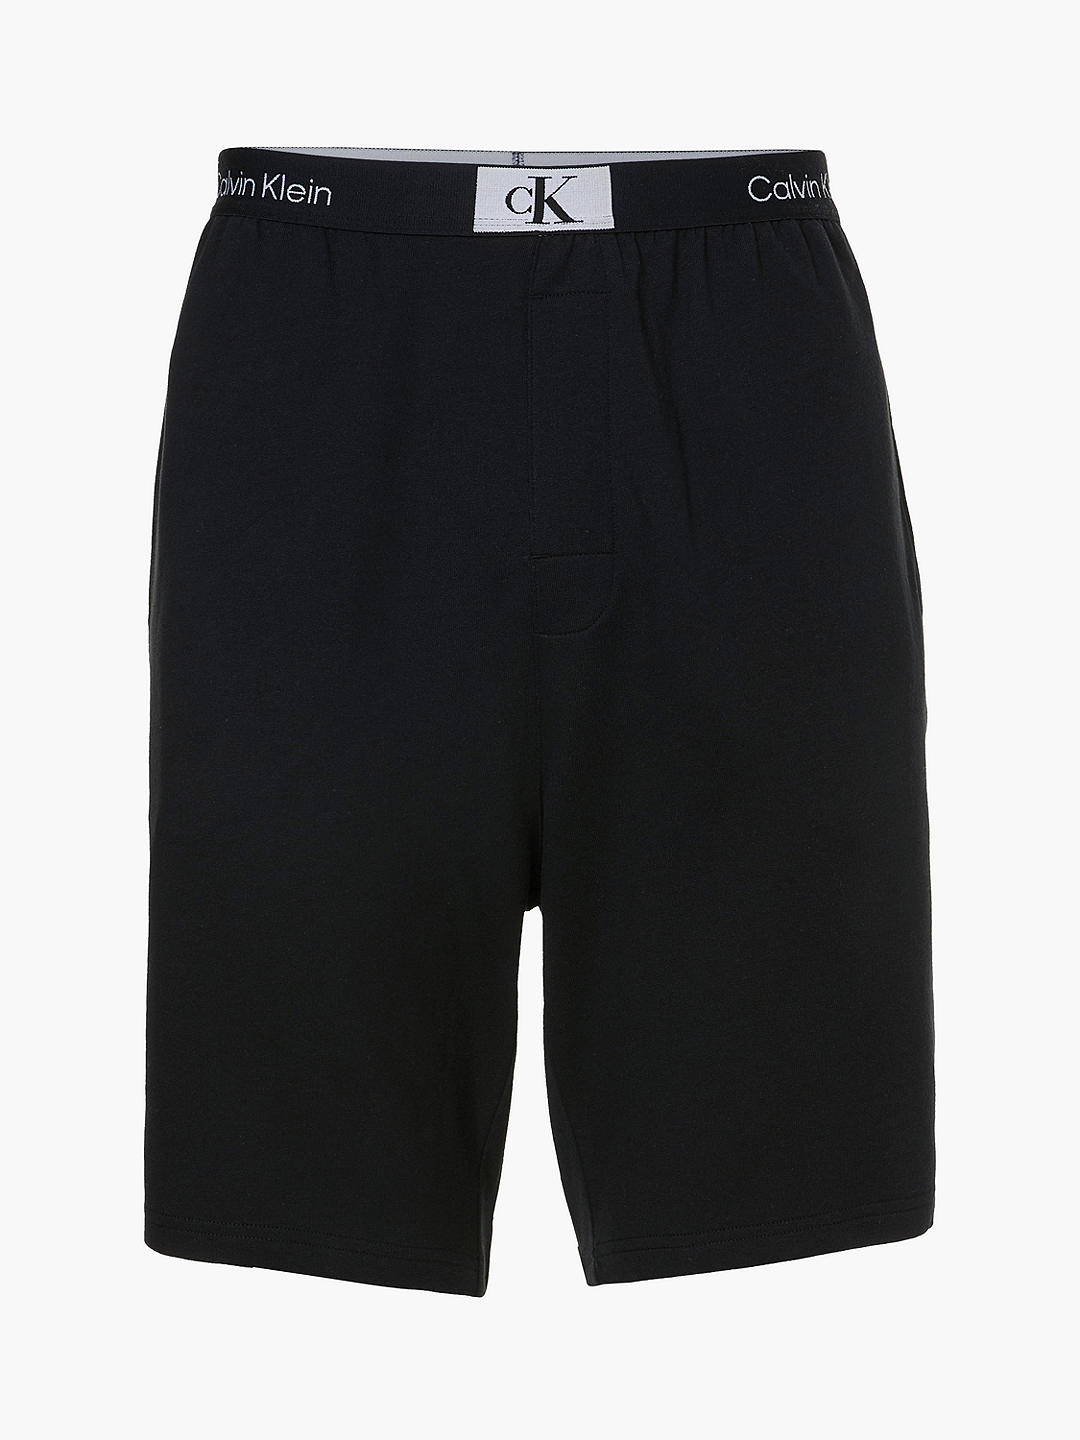 Calvin Klein Logo Band Pyjama Shorts, Black at John Lewis & Partners